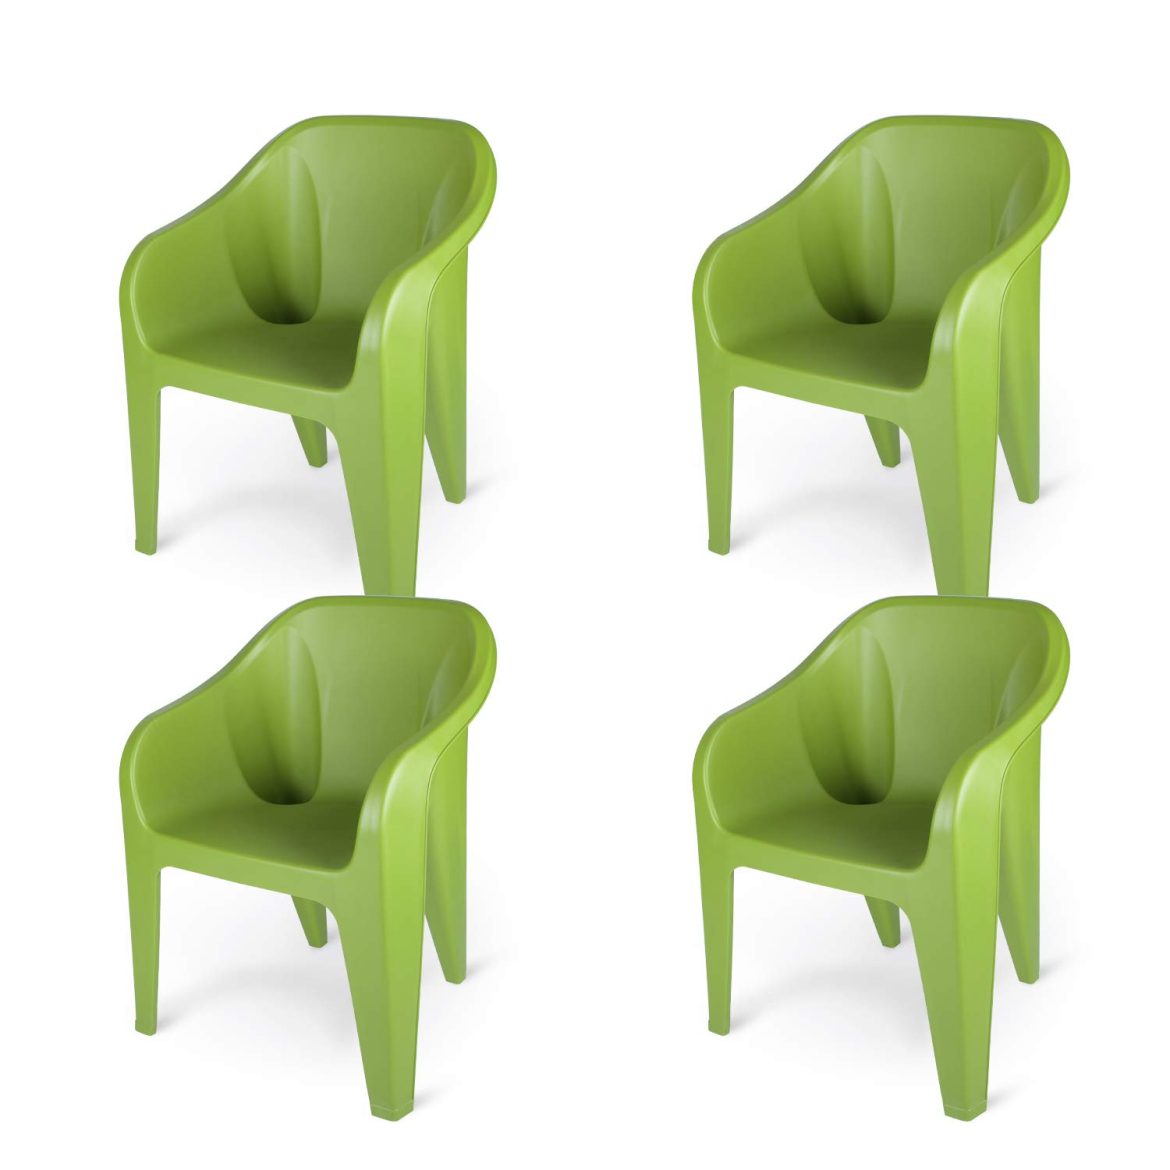 میز صندلی پلاستیکی مدرن – خرید ارزان قیمت از فروشگاه آنلاین